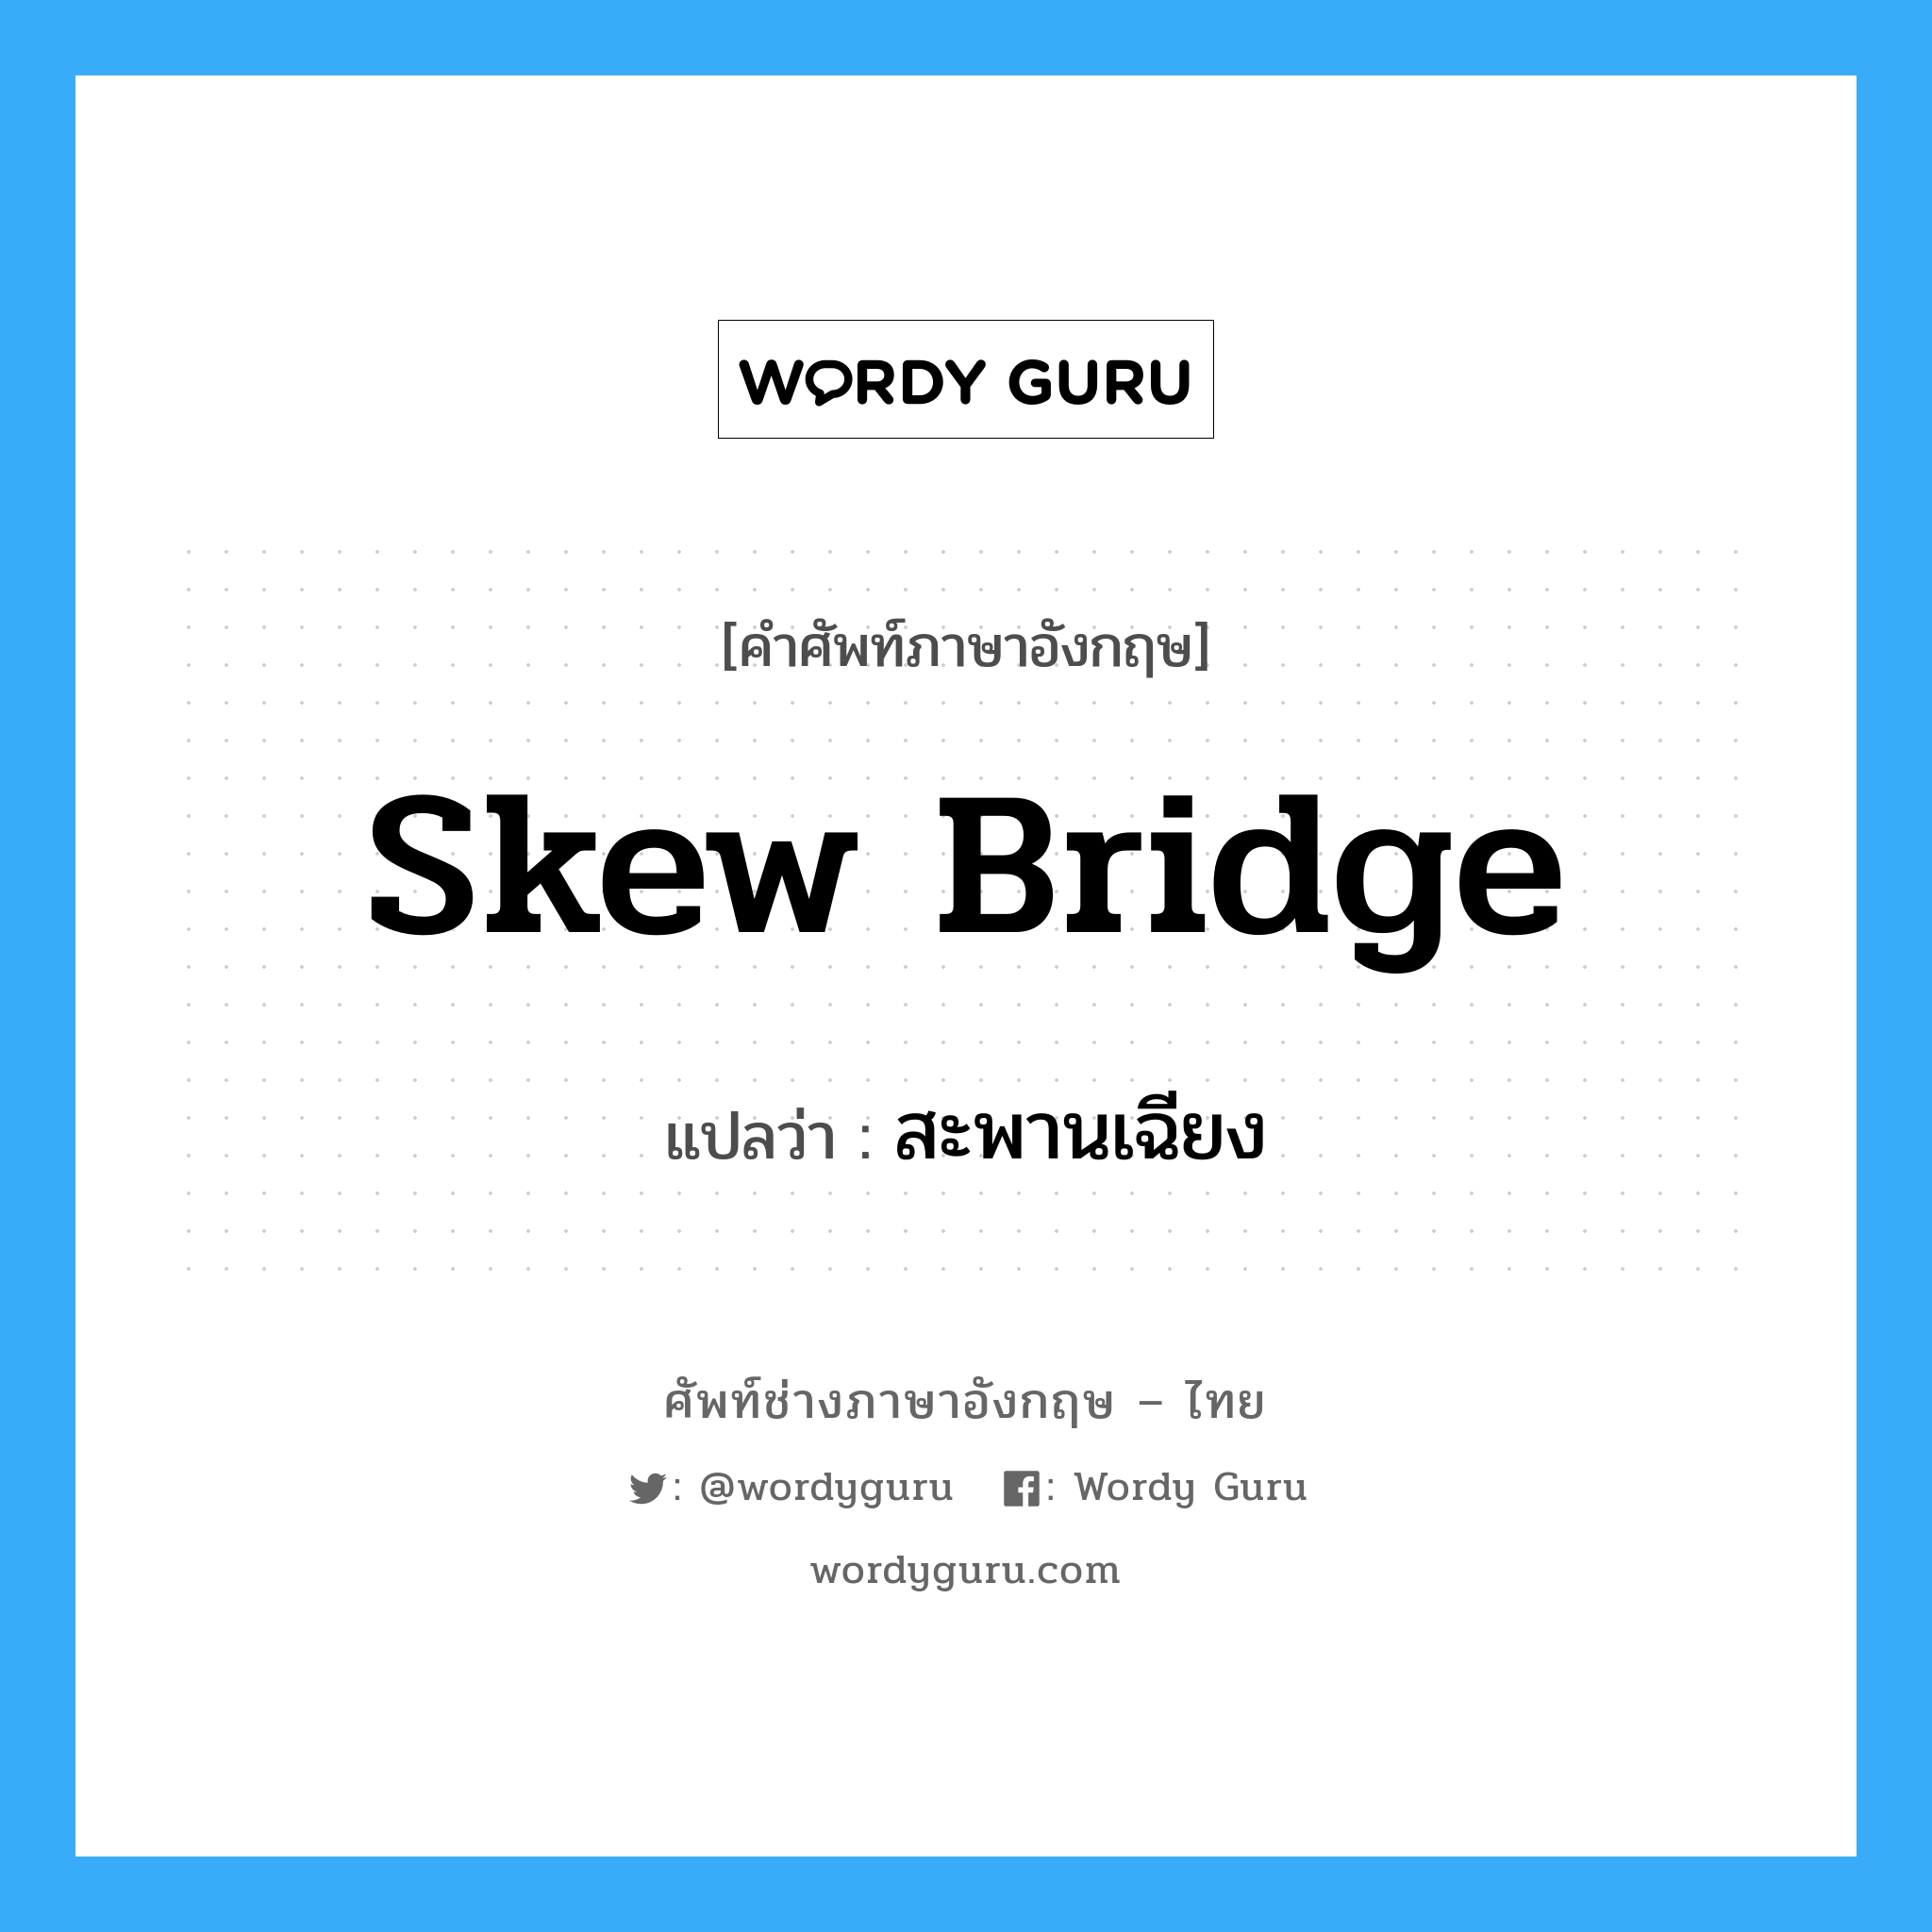 สะพานเฉียง ภาษาอังกฤษ?, คำศัพท์ช่างภาษาอังกฤษ - ไทย สะพานเฉียง คำศัพท์ภาษาอังกฤษ สะพานเฉียง แปลว่า skew bridge